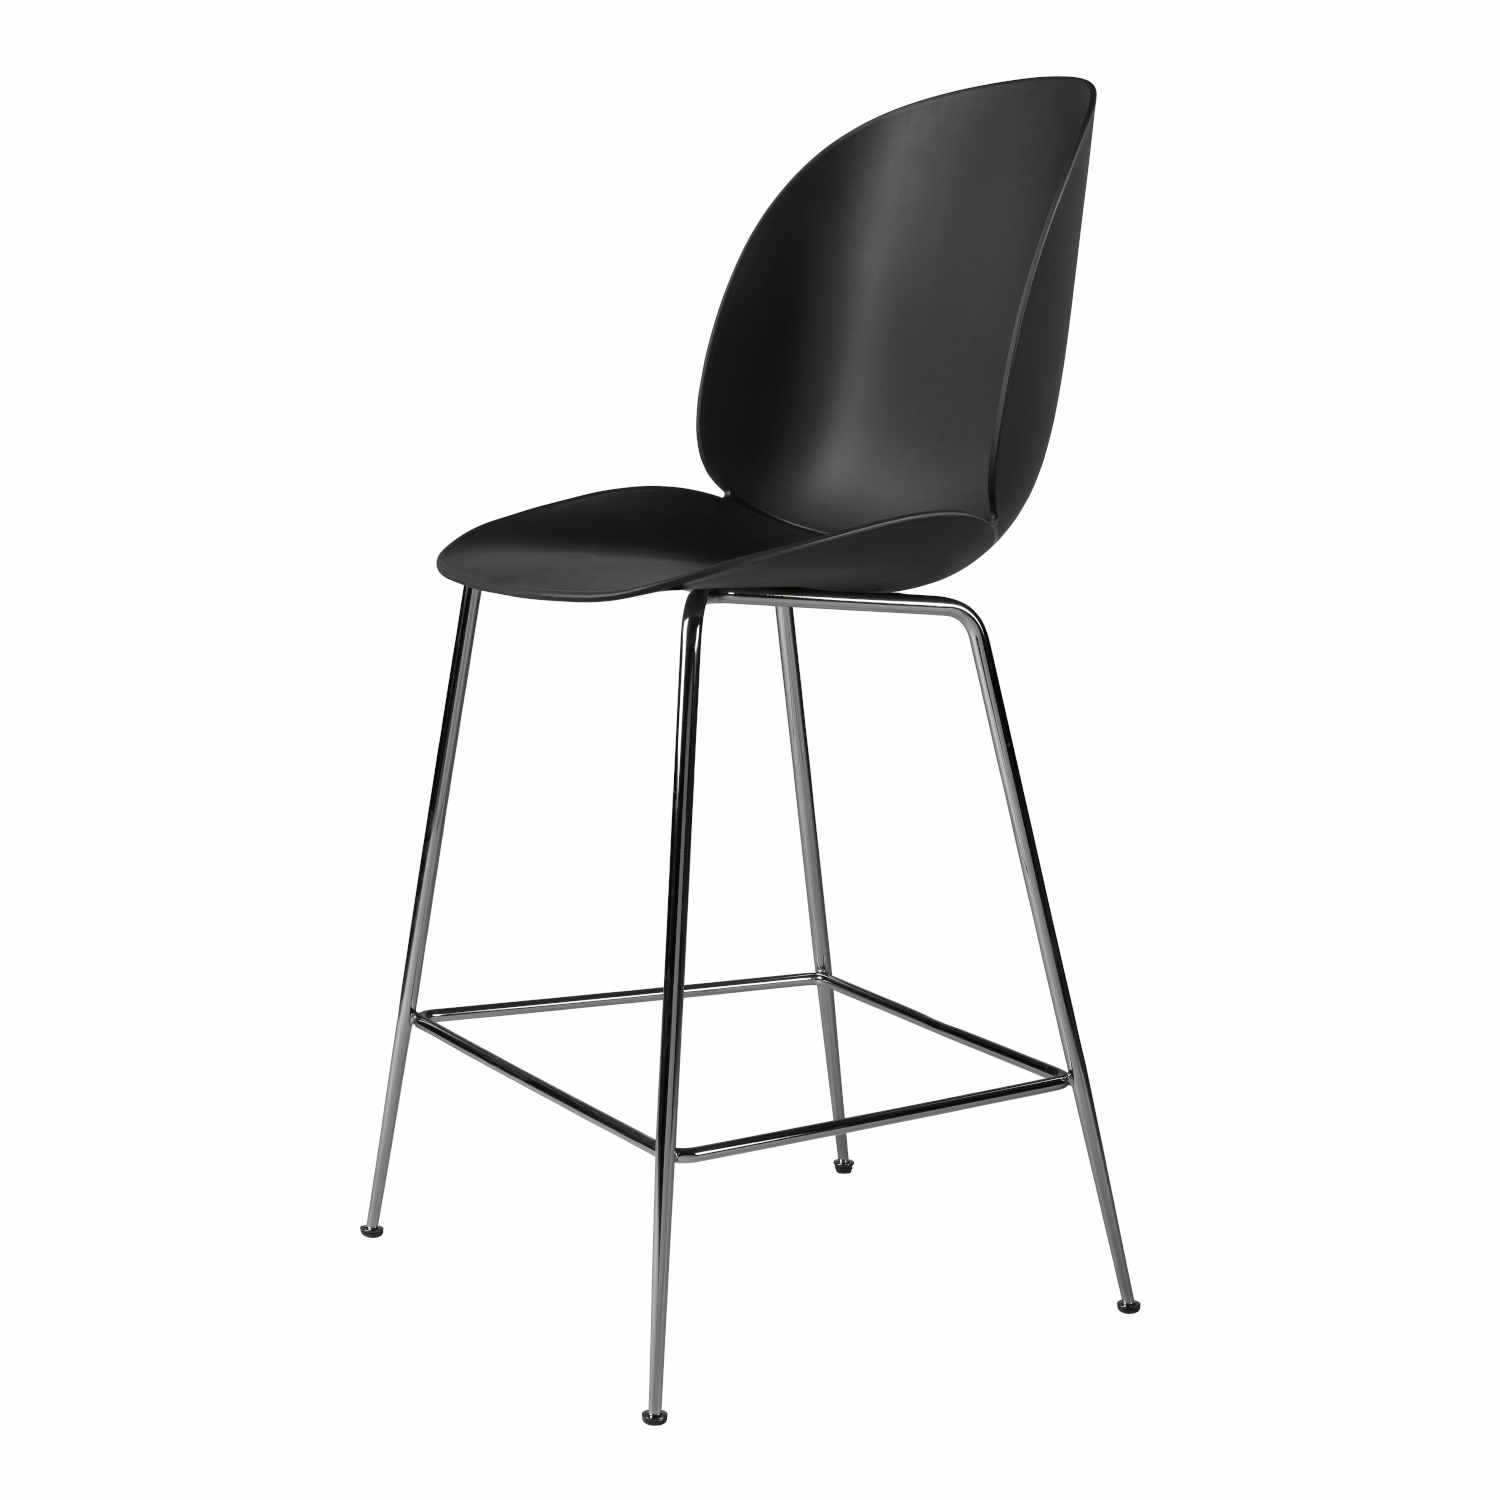 Beetle Counter Chair Conic Barhocker, Grösse sitzhöhe 73,5 cm, Sitzschale Plastic Shell pebble brown, Untergestell Conic Base black matt von GUBI